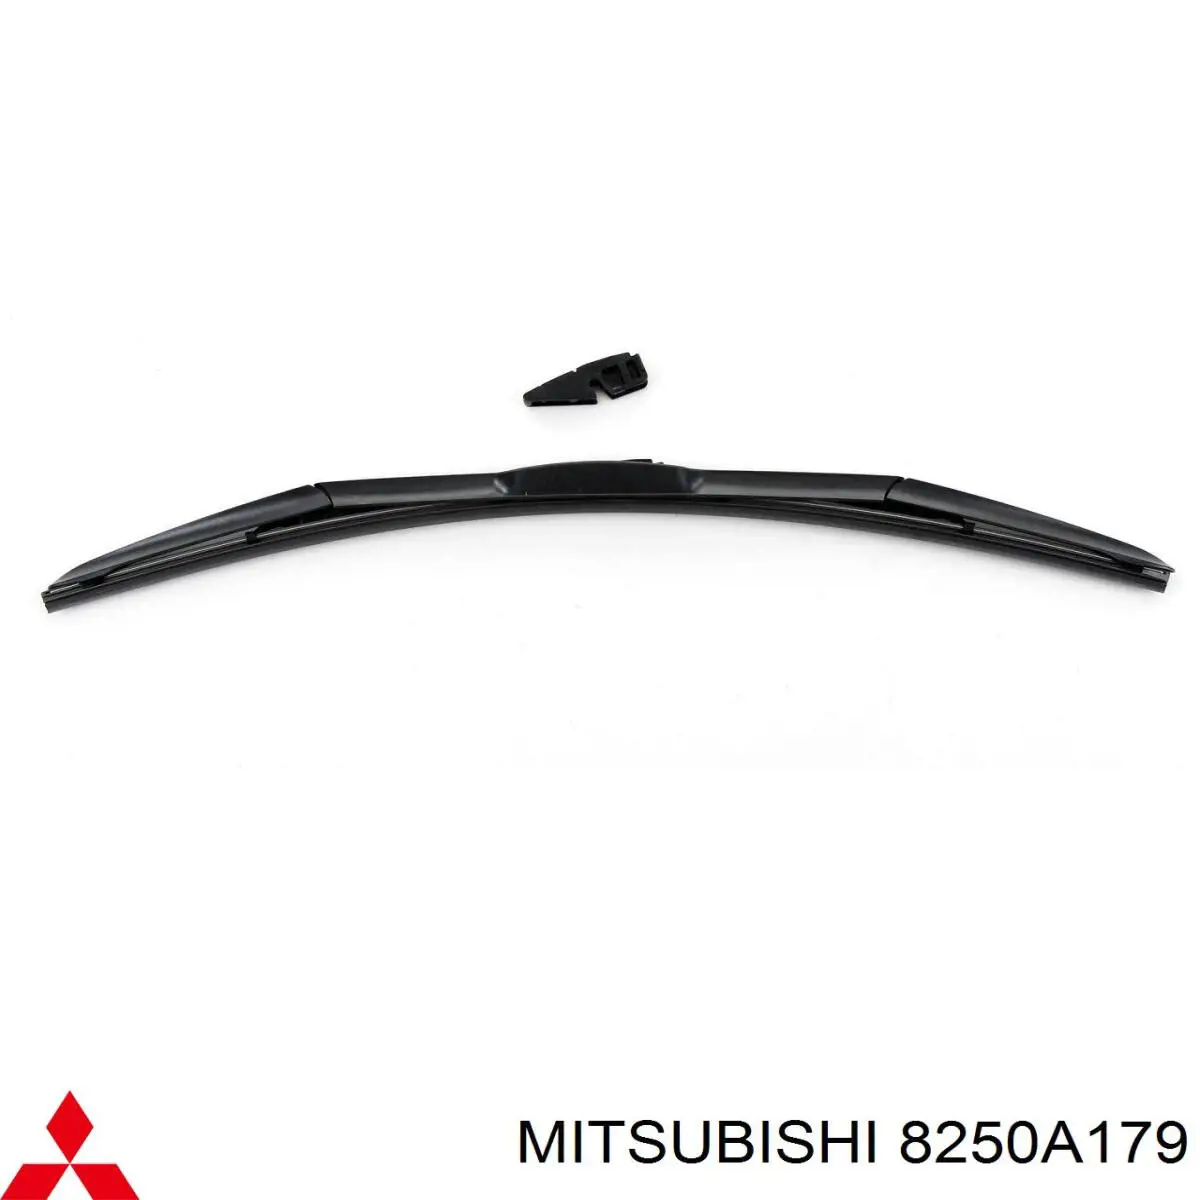 8250A179 Mitsubishi goma del limpiaparabrisas lado conductor